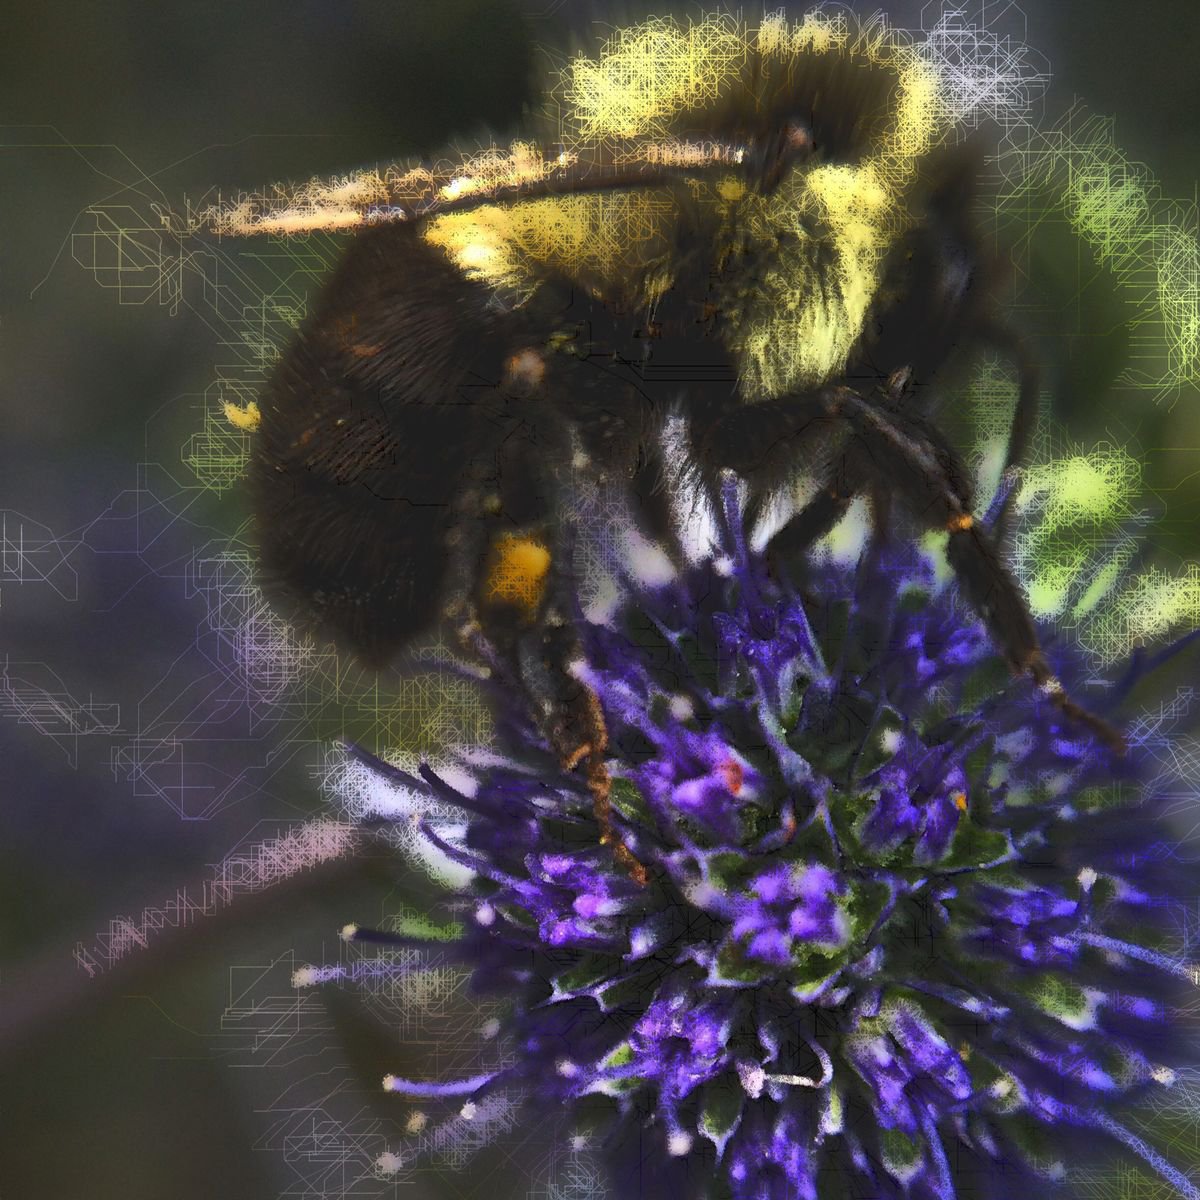 Bumbly Bee No. 3 by Barbara Storey